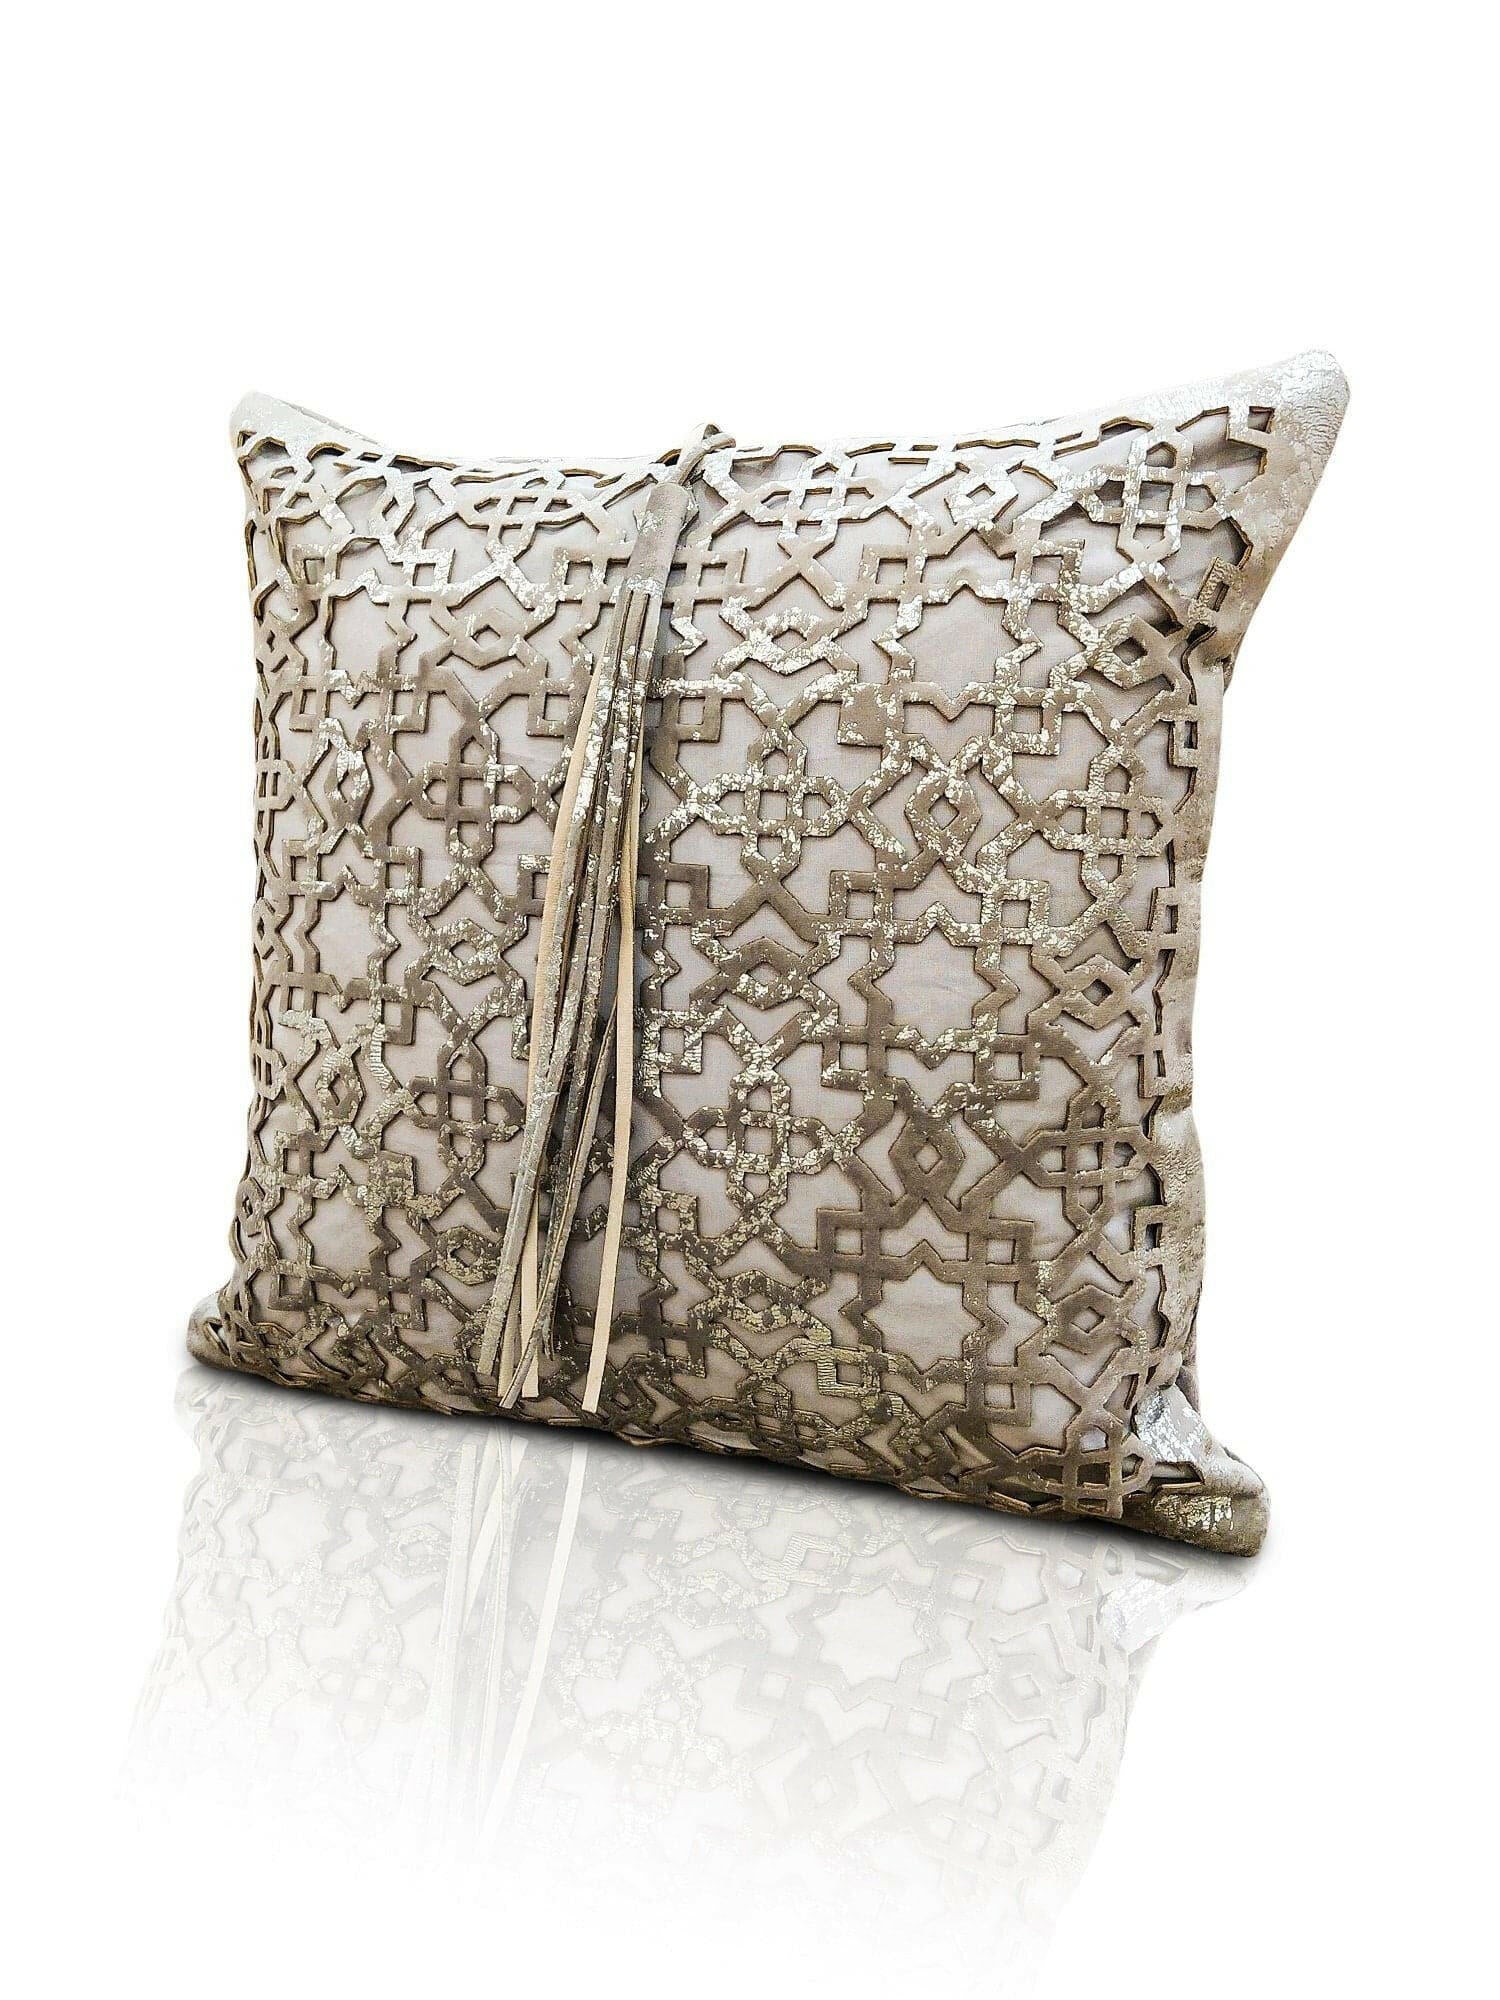 Ottoman Cushion Cover - Creative Home Designs Pillowcases, Turkish Throw Pillows & Shams, Silver Color Cut Out Geometric Pattern Sham,CC-CH-OTMN-Si-1S1R,CC-CH-OTMN-Si-2S,CC-CH-OTMN-Si-2R,CC-CH-OTMN-Si-2S1R